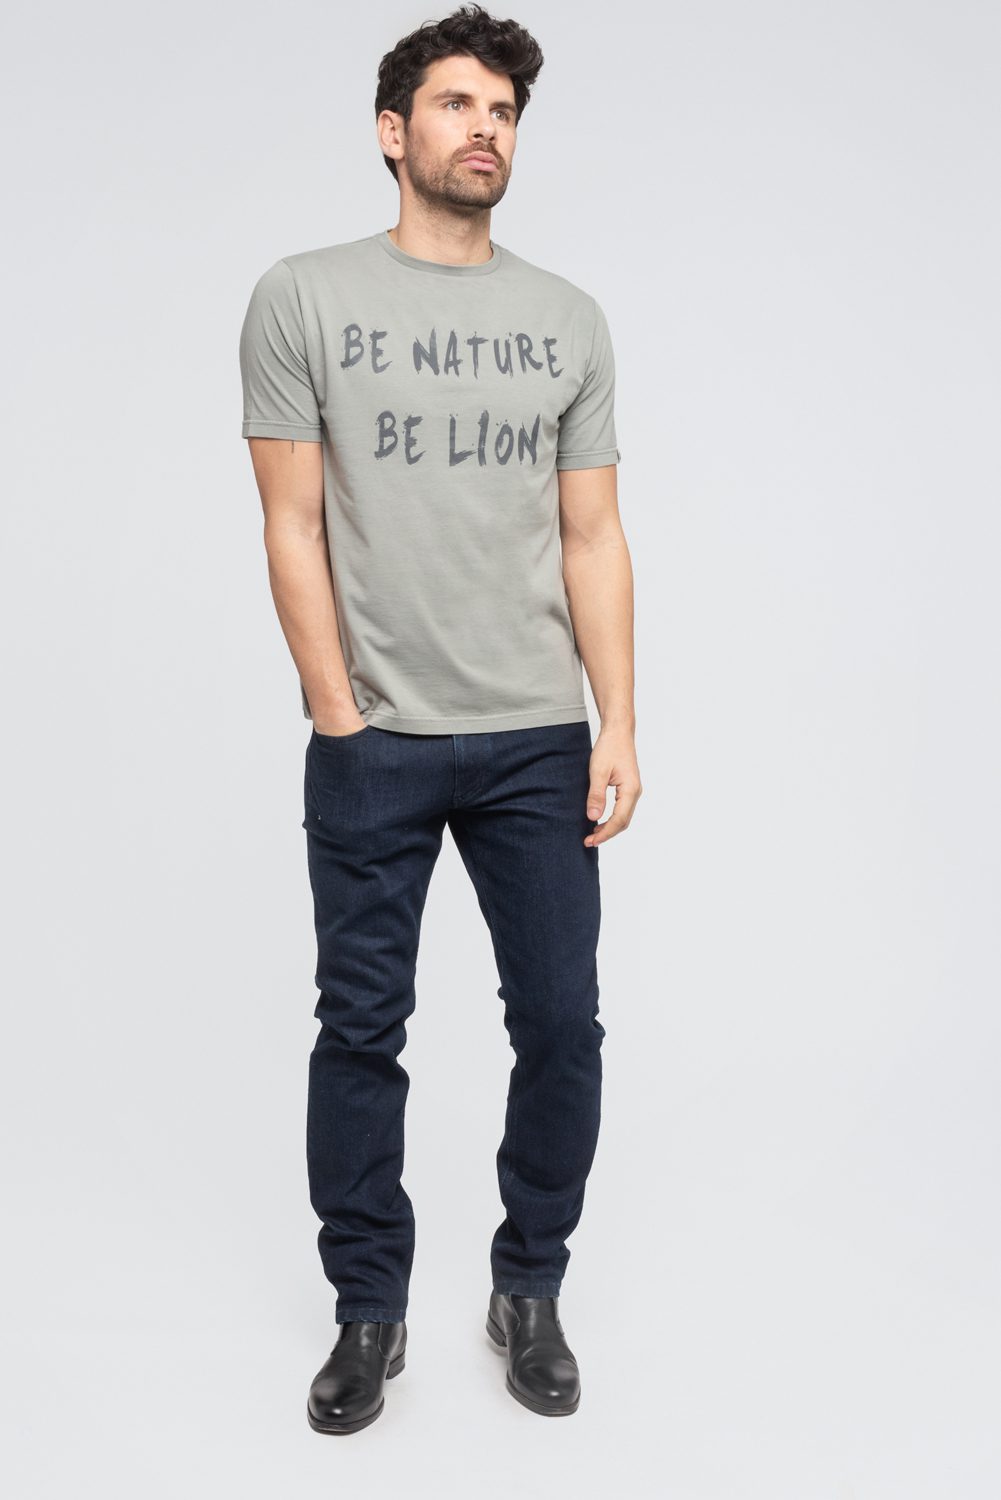 KIBO - T-shirt 100% Coton BIO - GRIS